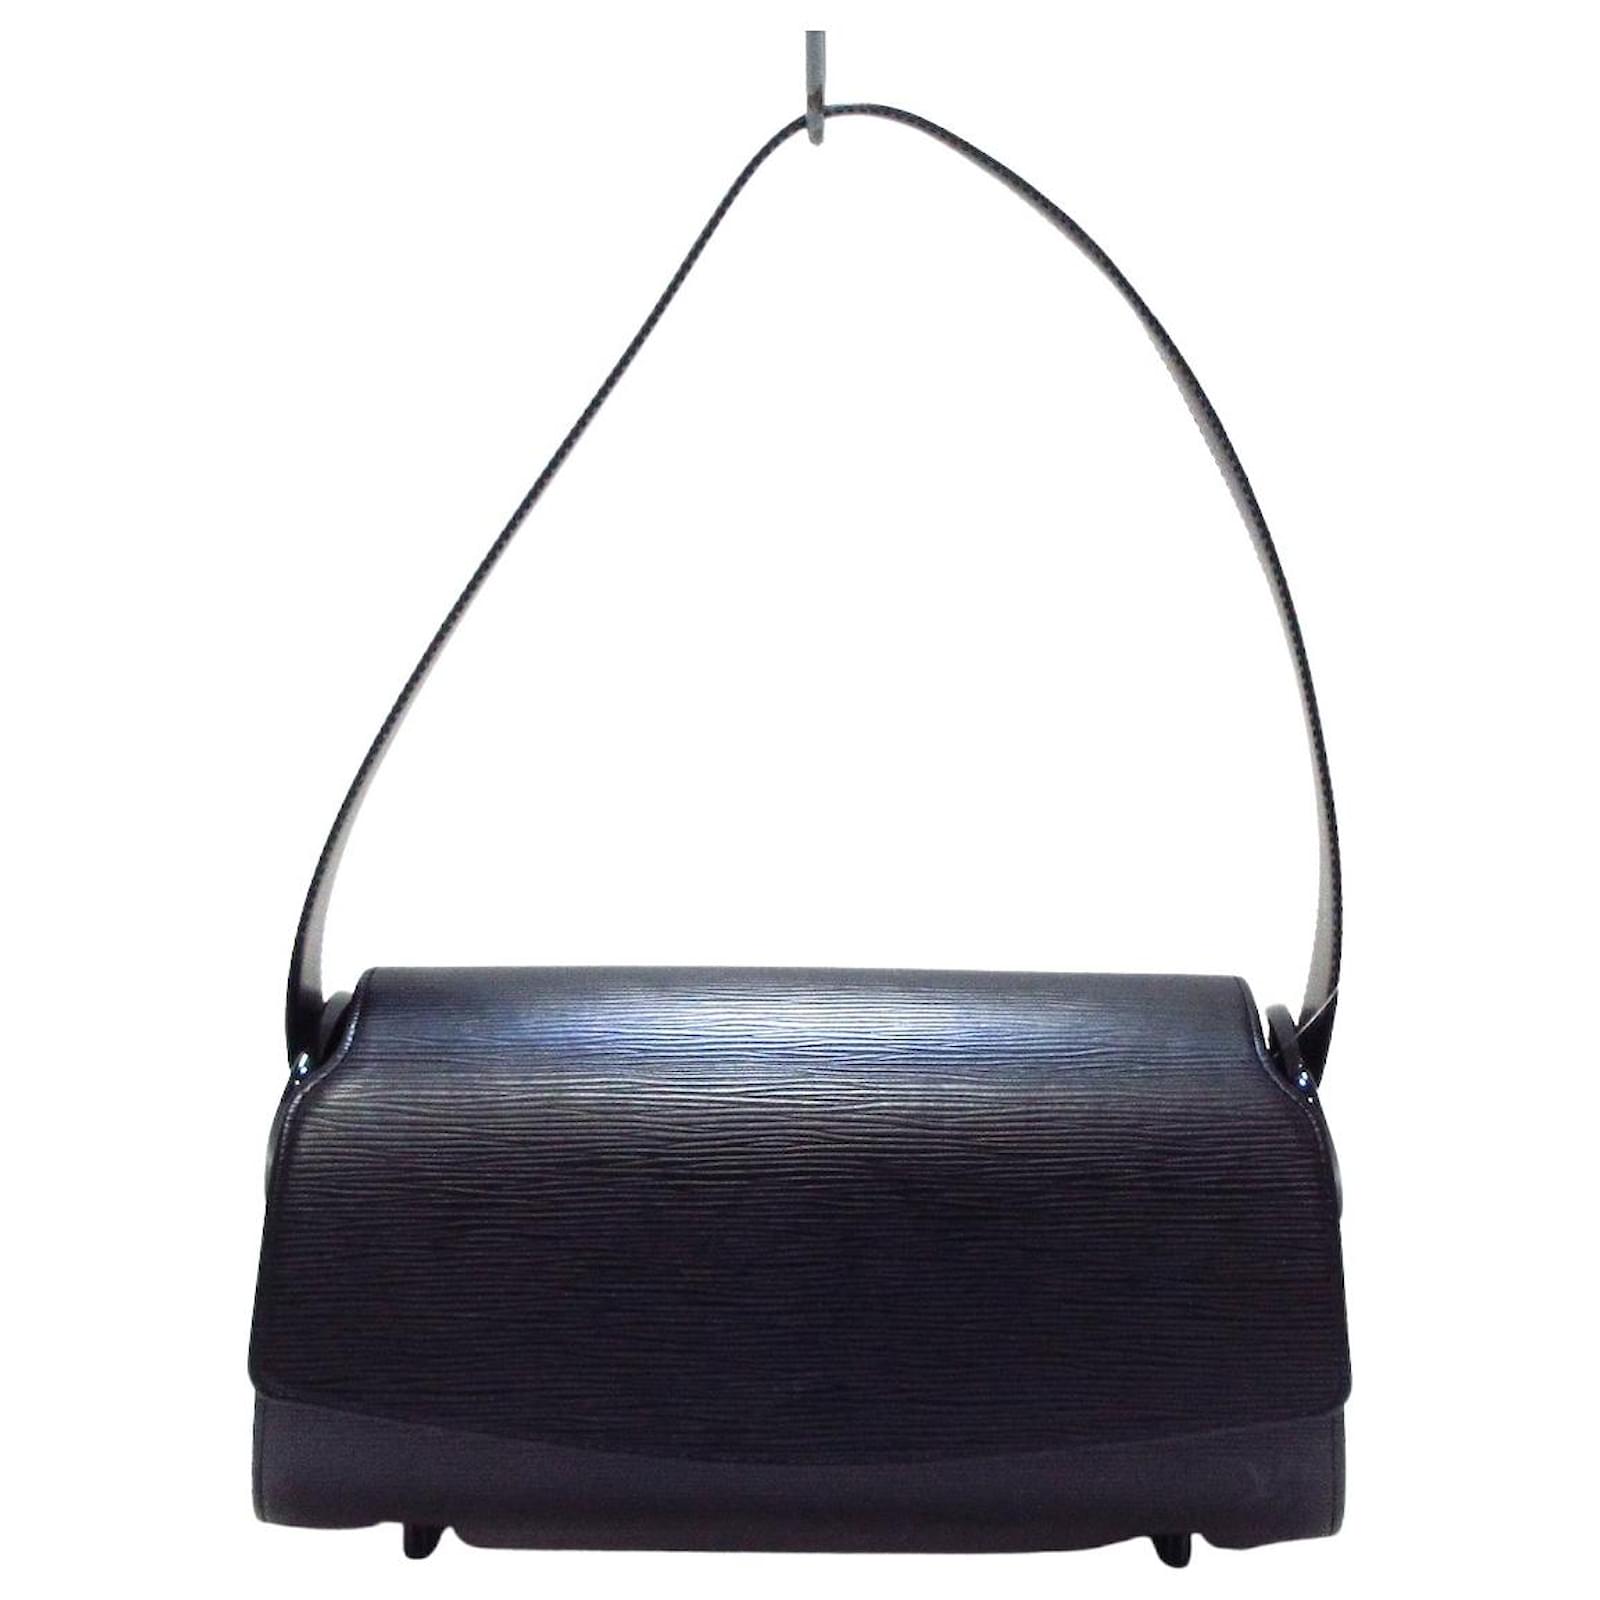 Nocturne leather handbag